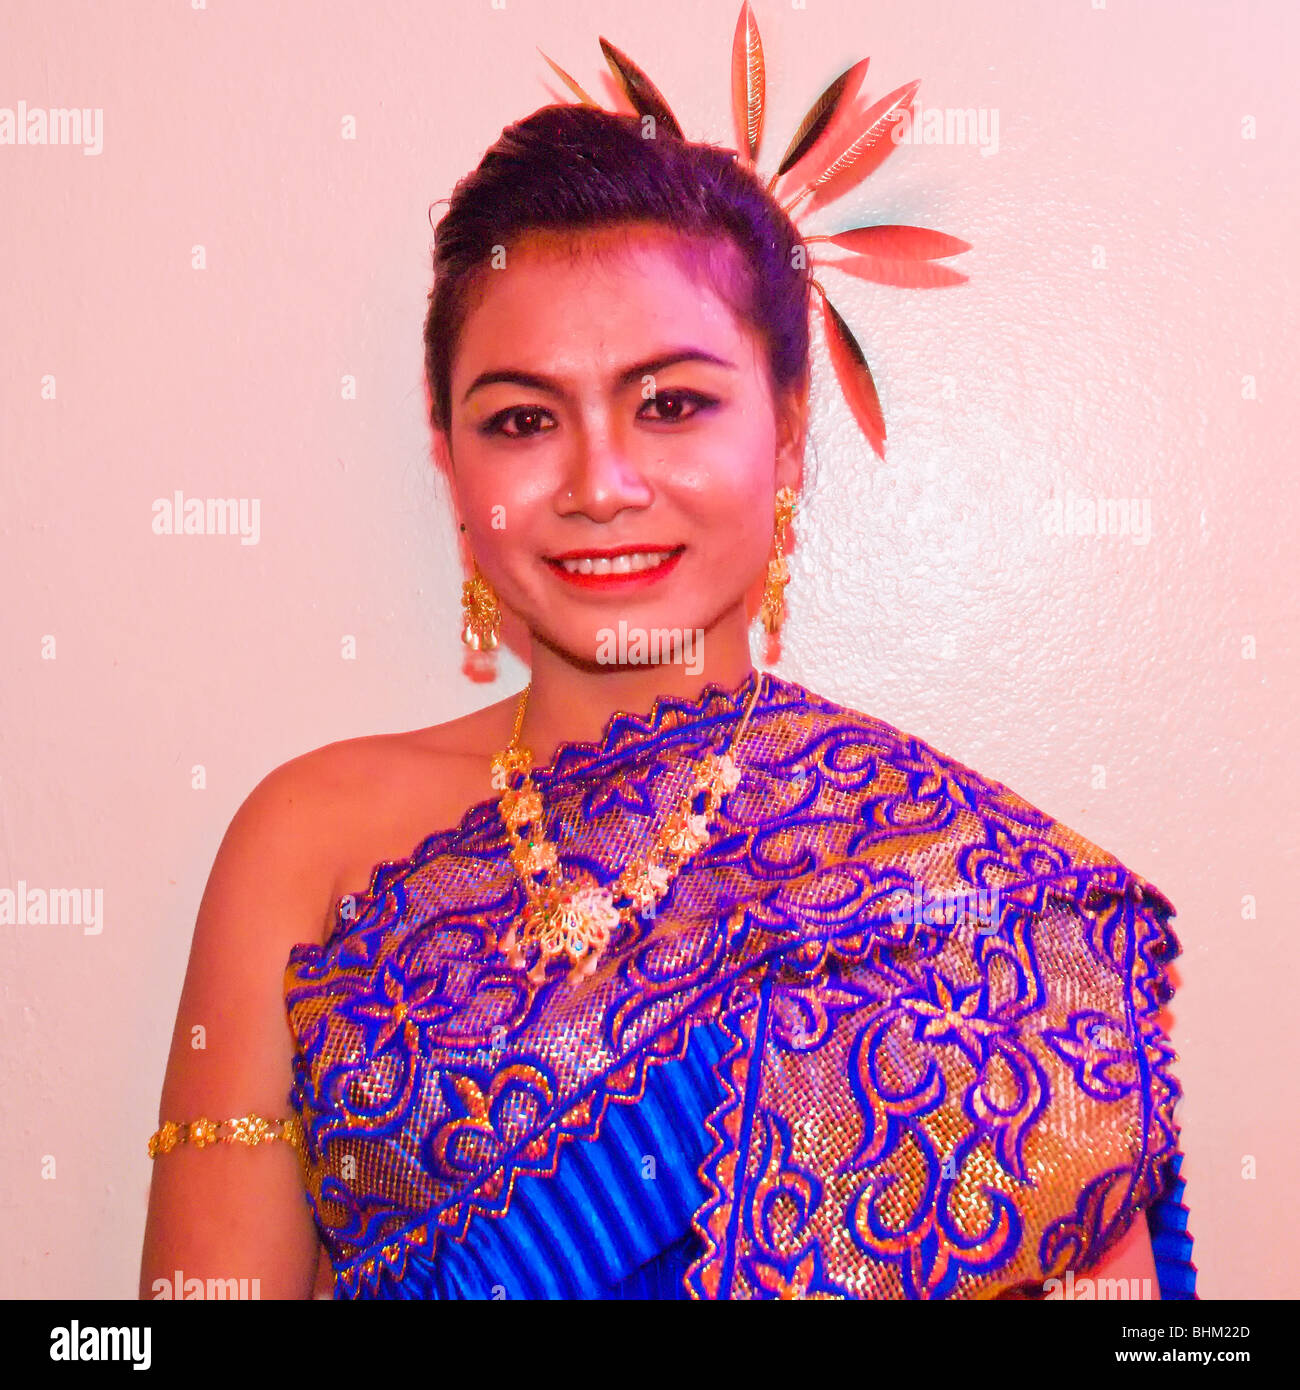 La Thaïlande, Pattaya, Loy Krathong Festival en novembre - Femme vêtue de costumes traditionnels Banque D'Images